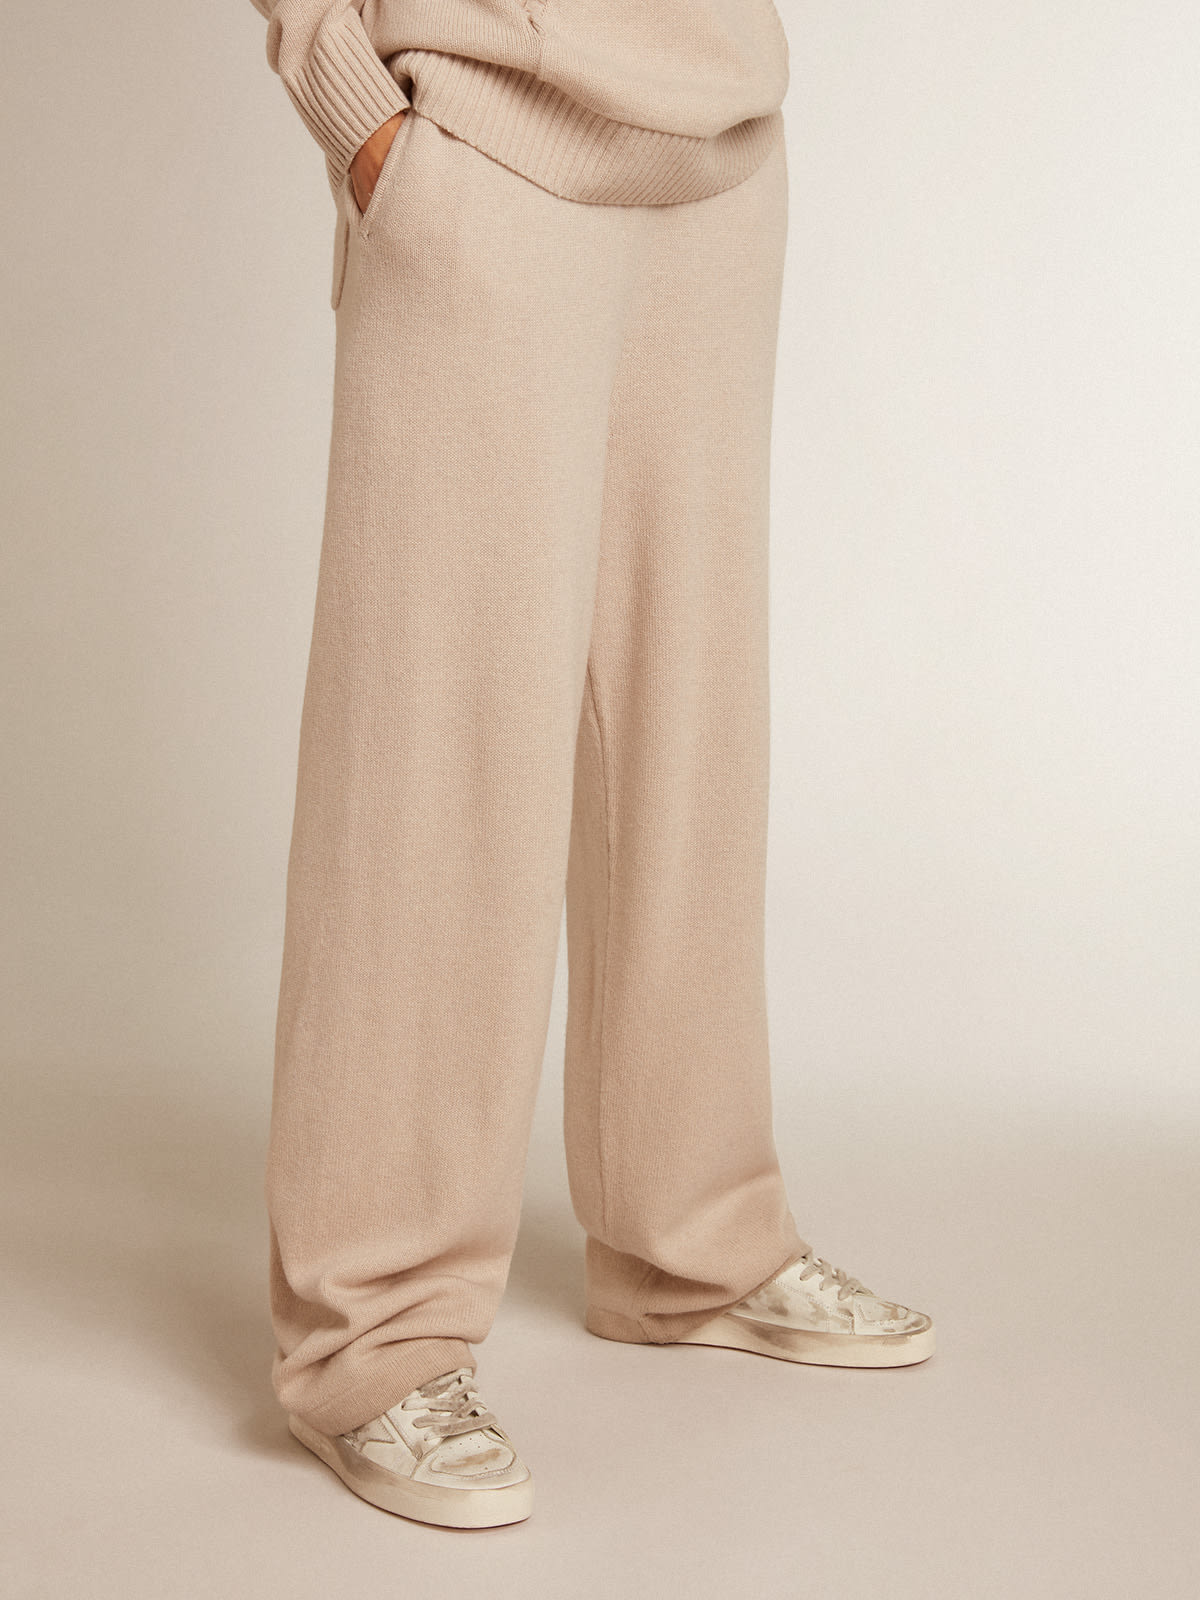 Golden Goose - Pantalone jogging donna misto cashmere di colore bianco naturale in 